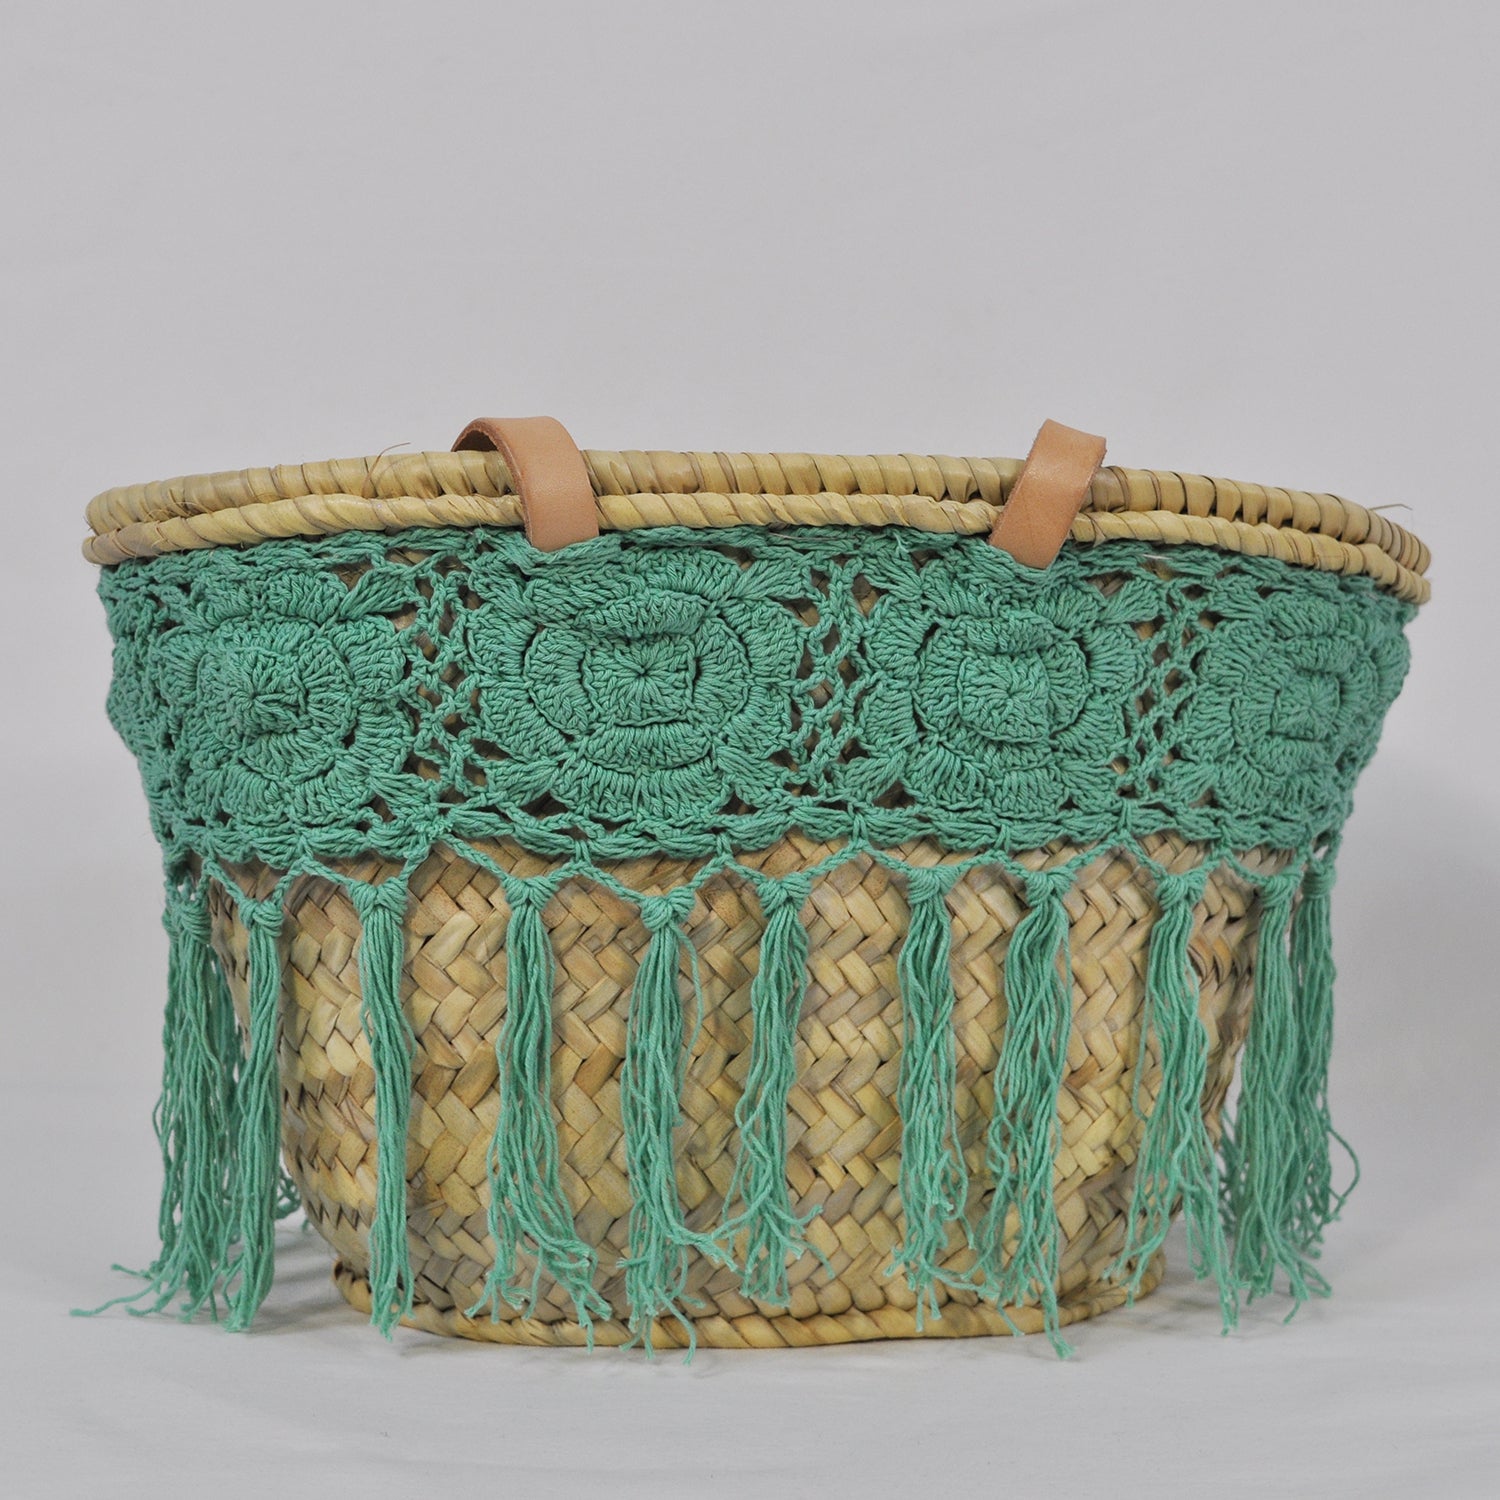 Turquoise crochet basket